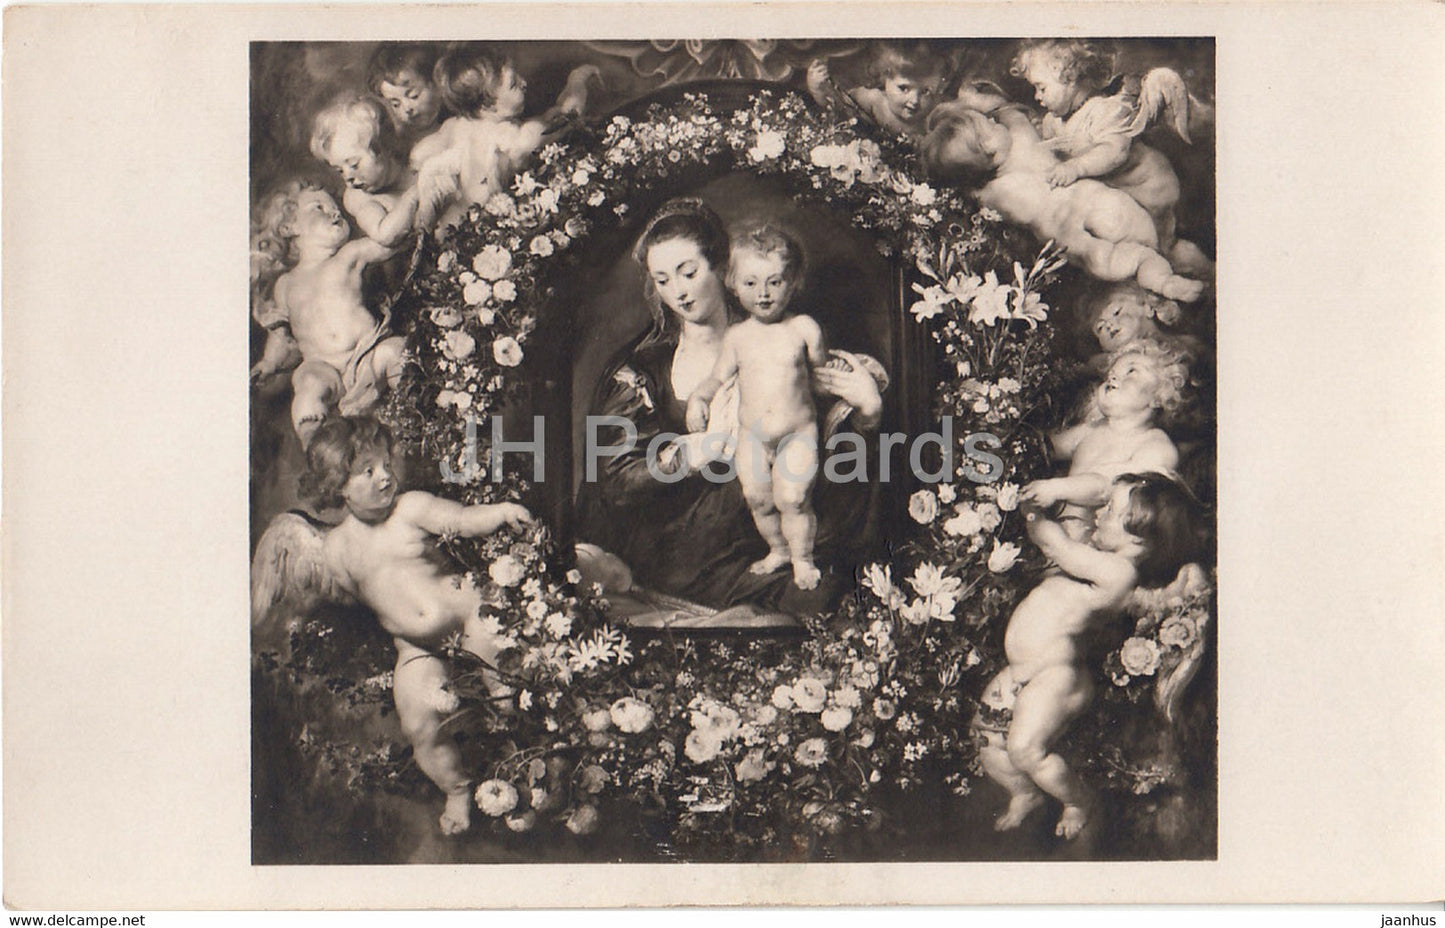 painting by Peter Paul Rubens - Die Madonna im Blumenkranz - Flemish art - old postcard - Germany - unused - JH Postcards